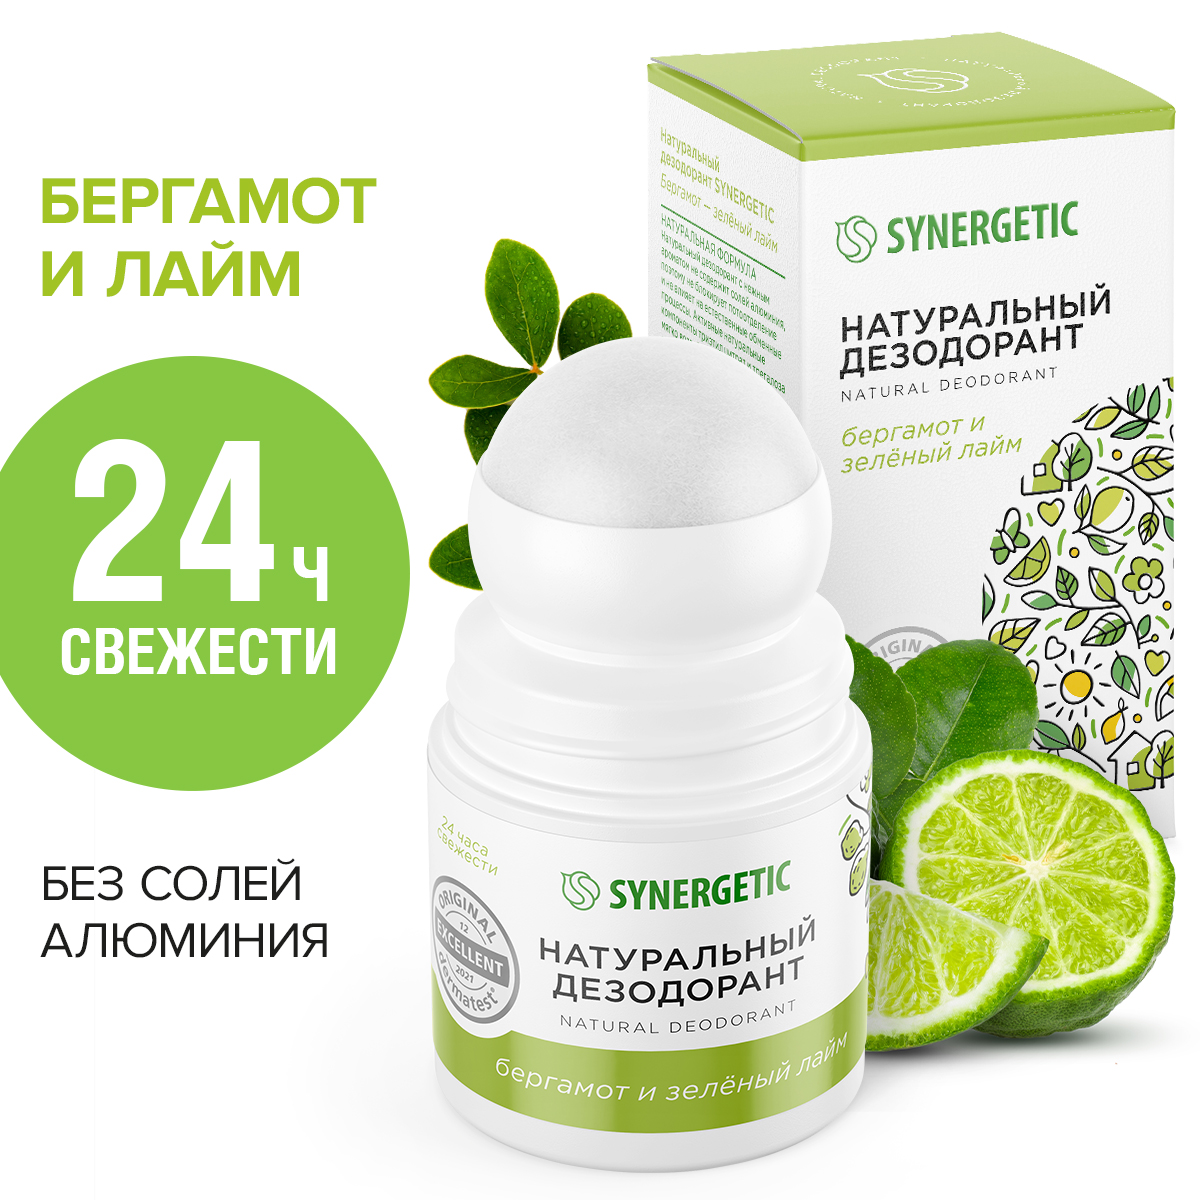 Дезодорант Synergetic бергамот-зеленый лайм, натуральный, 50 мл дезодорант synergetic бергамот зеленый лайм натуральный 50 мл